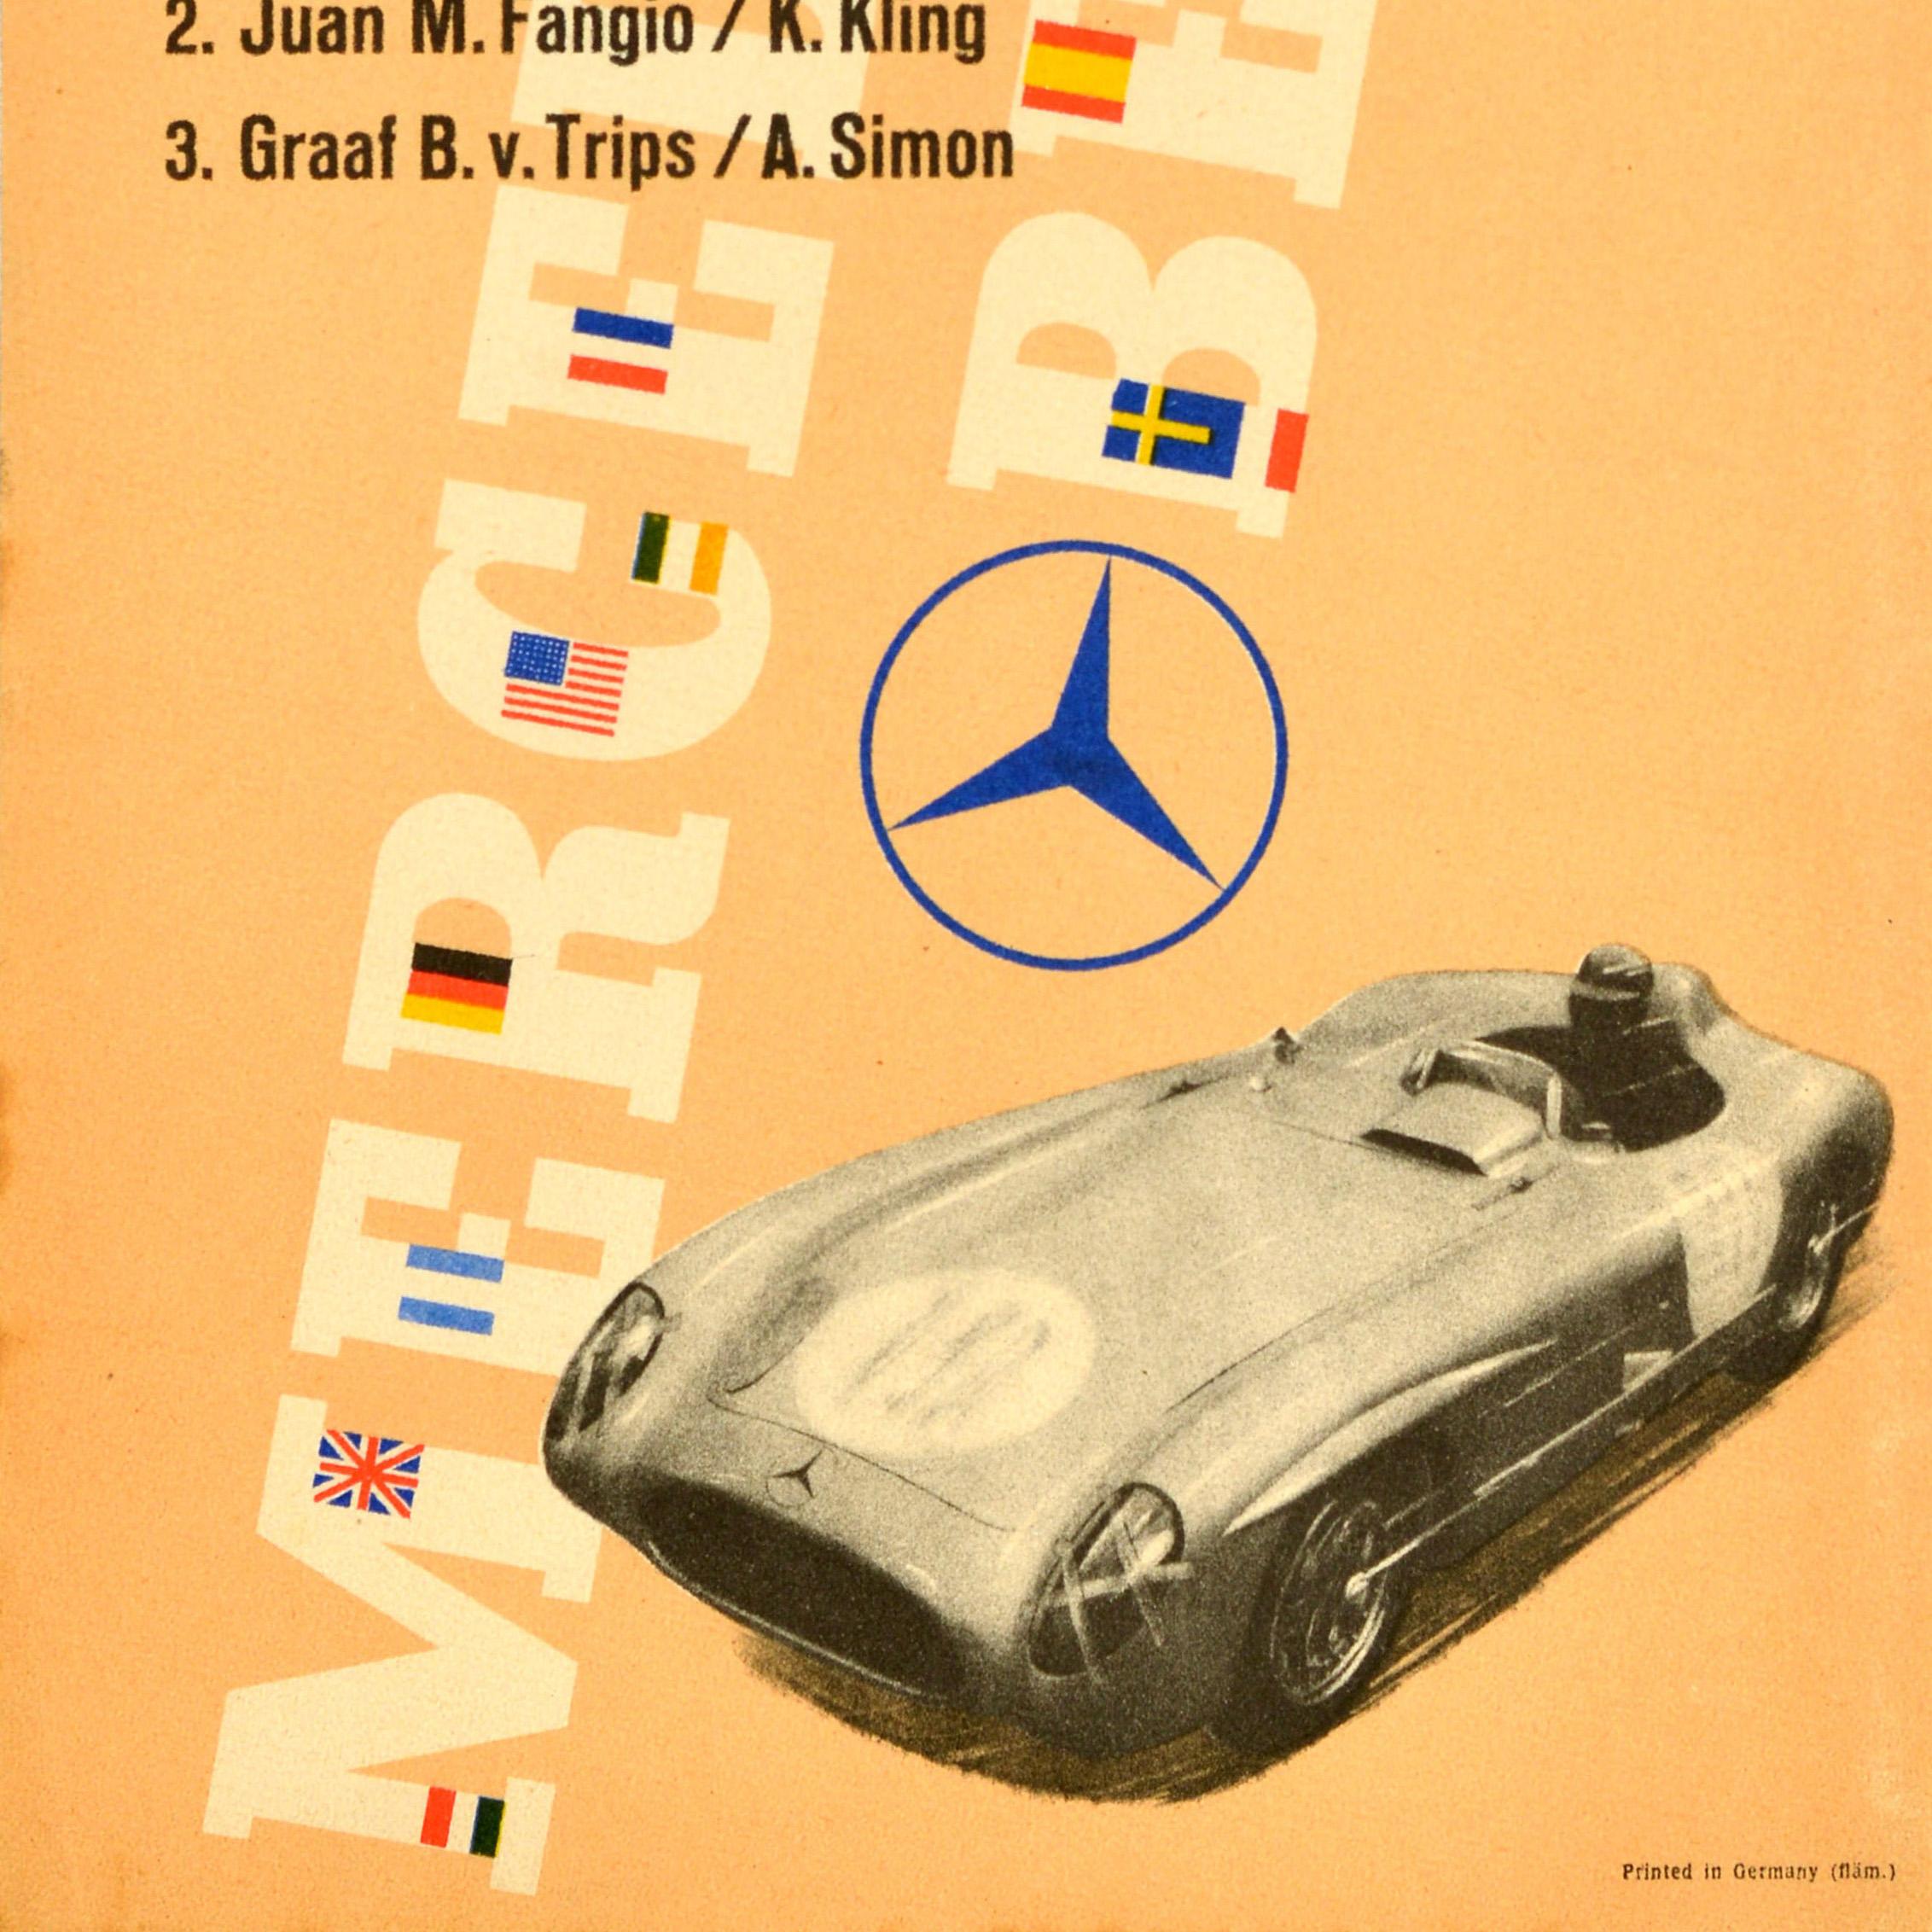 Affiche originale de course automobile émise par Mercedes Benz pour commémorer leur triple victoire aux courses Tourist Trophy Irland / Ireland en 1955 avec une liste des gagnants : Drievoudige Victorie van de Rensportwagens Voitures de sport de